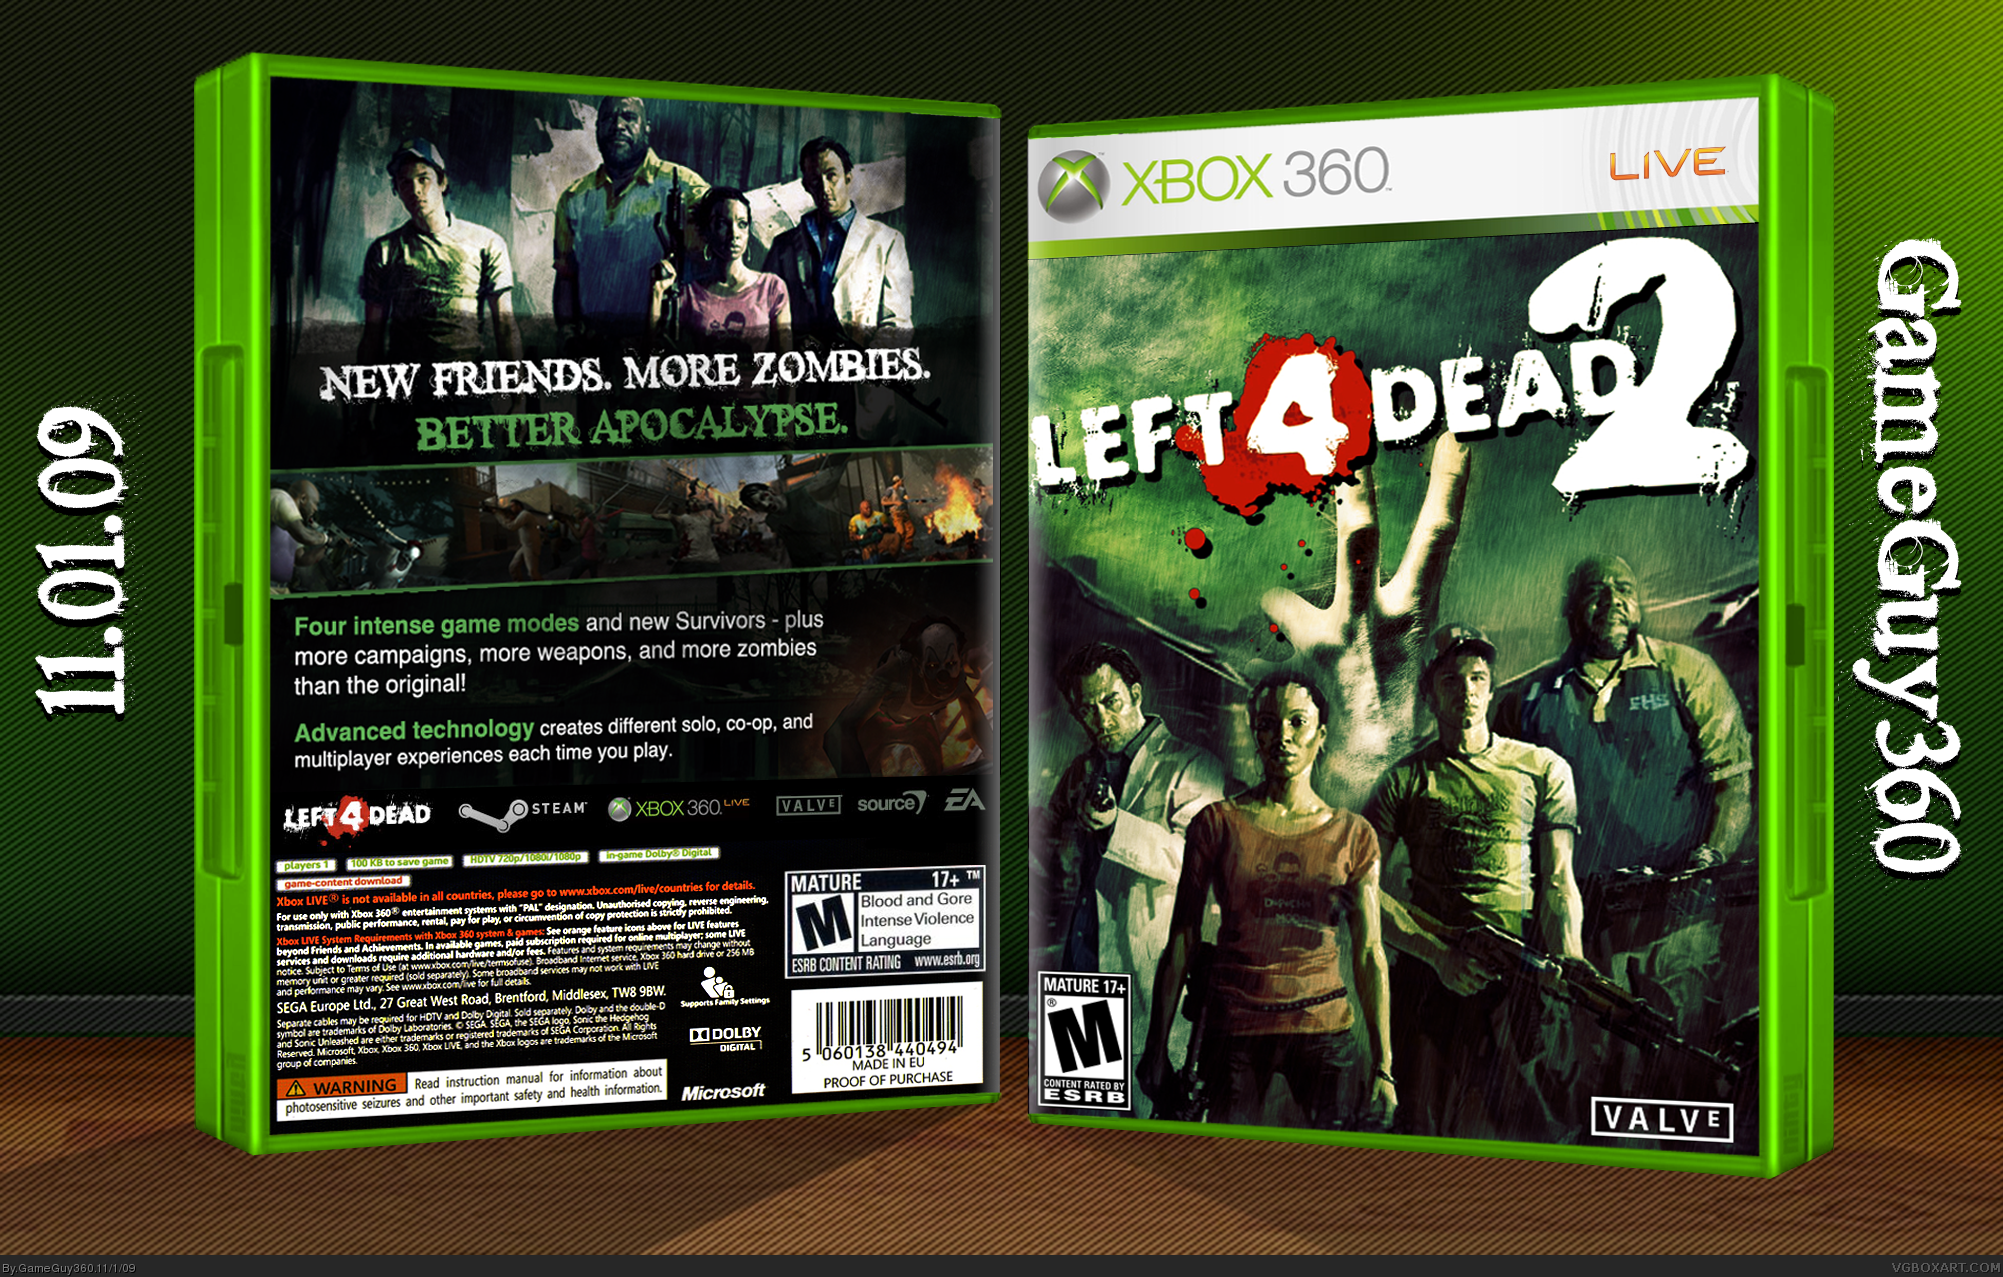 Xbox 360 life. Left 4 Dead 2 Xbox 360 диск. Хбокс 360 left 4 Dead. Left 4 Dead 1 Xbox 360. Left 4 Dead 2 Xbox 360 на 2.